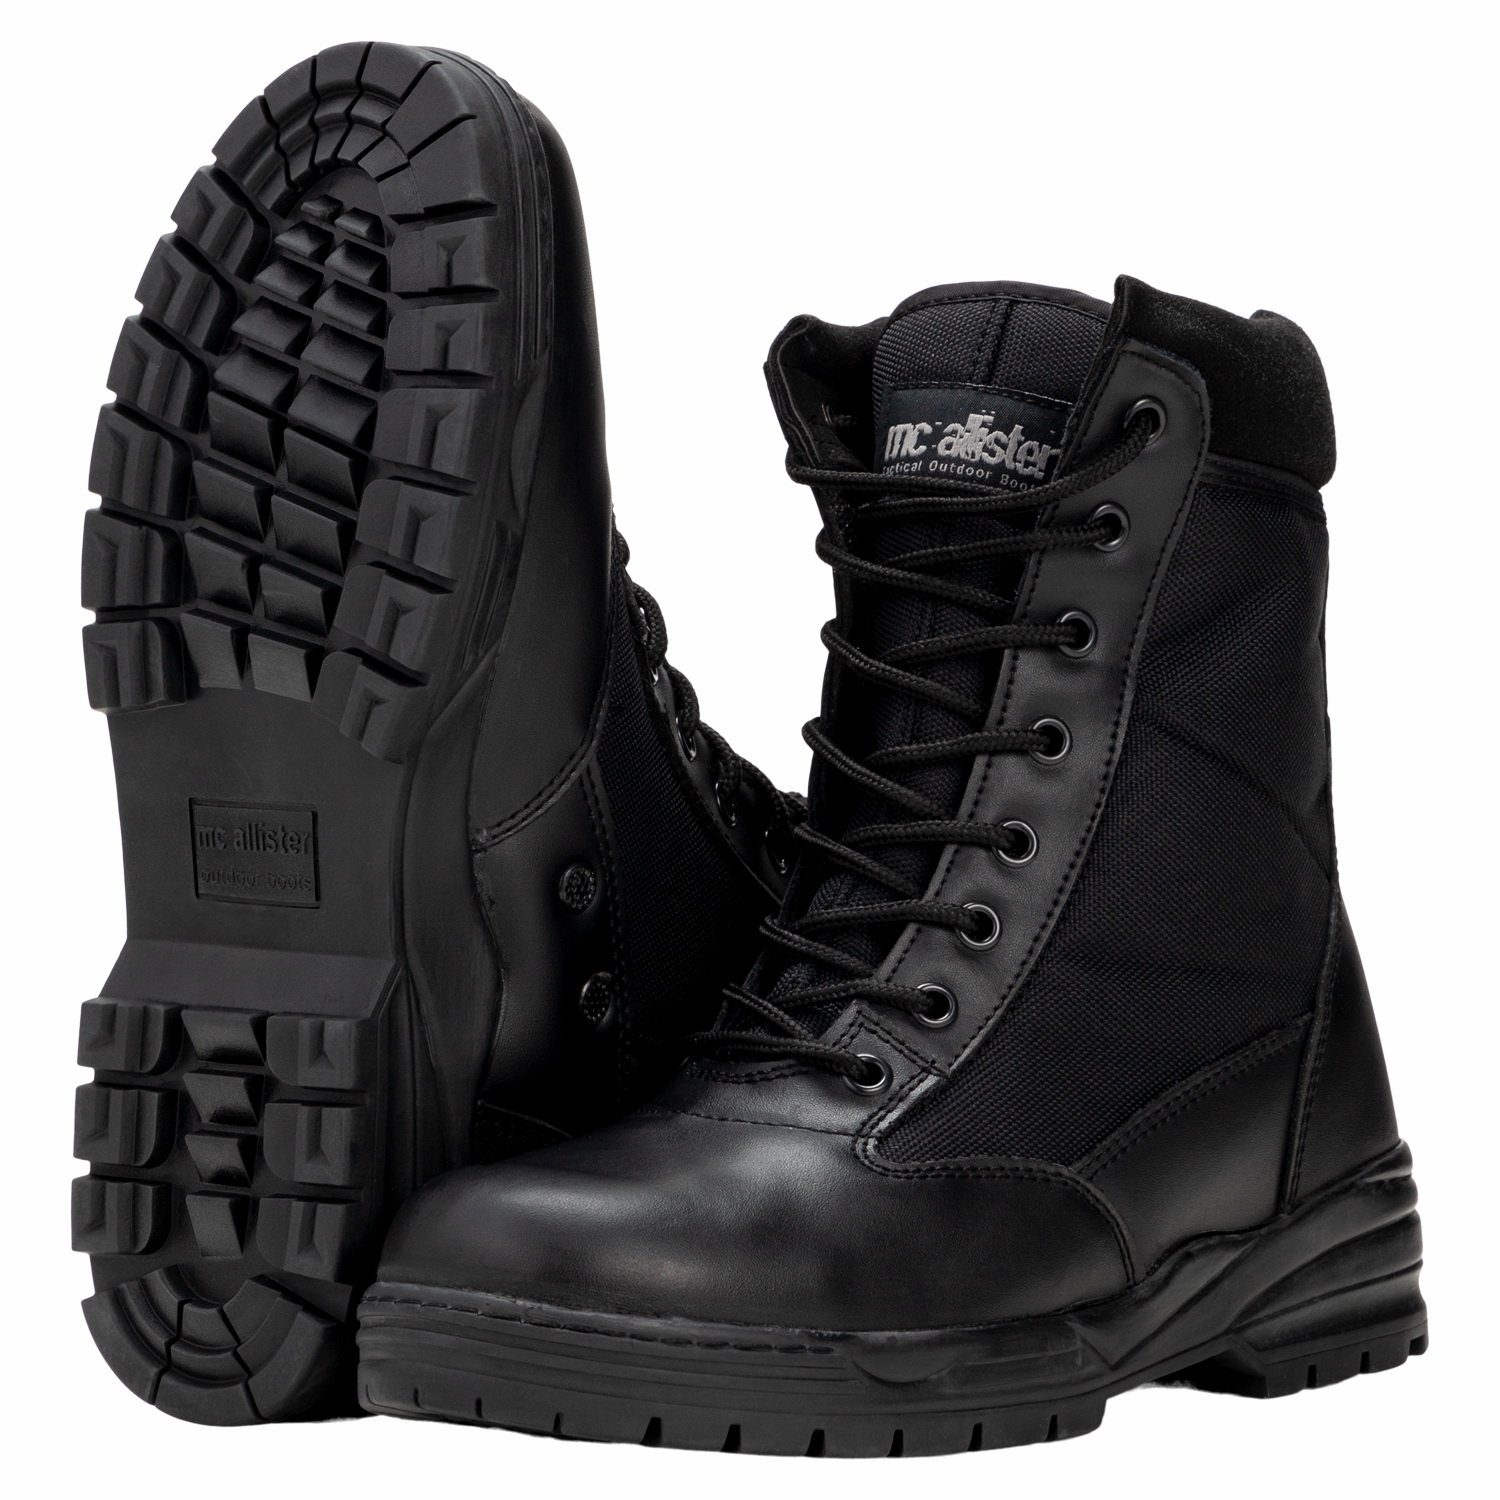 Commando-Industries Army Patriot Boots Kampfstiefel mit Reißverschluss Schwarz Stiefel | Schnürstiefel